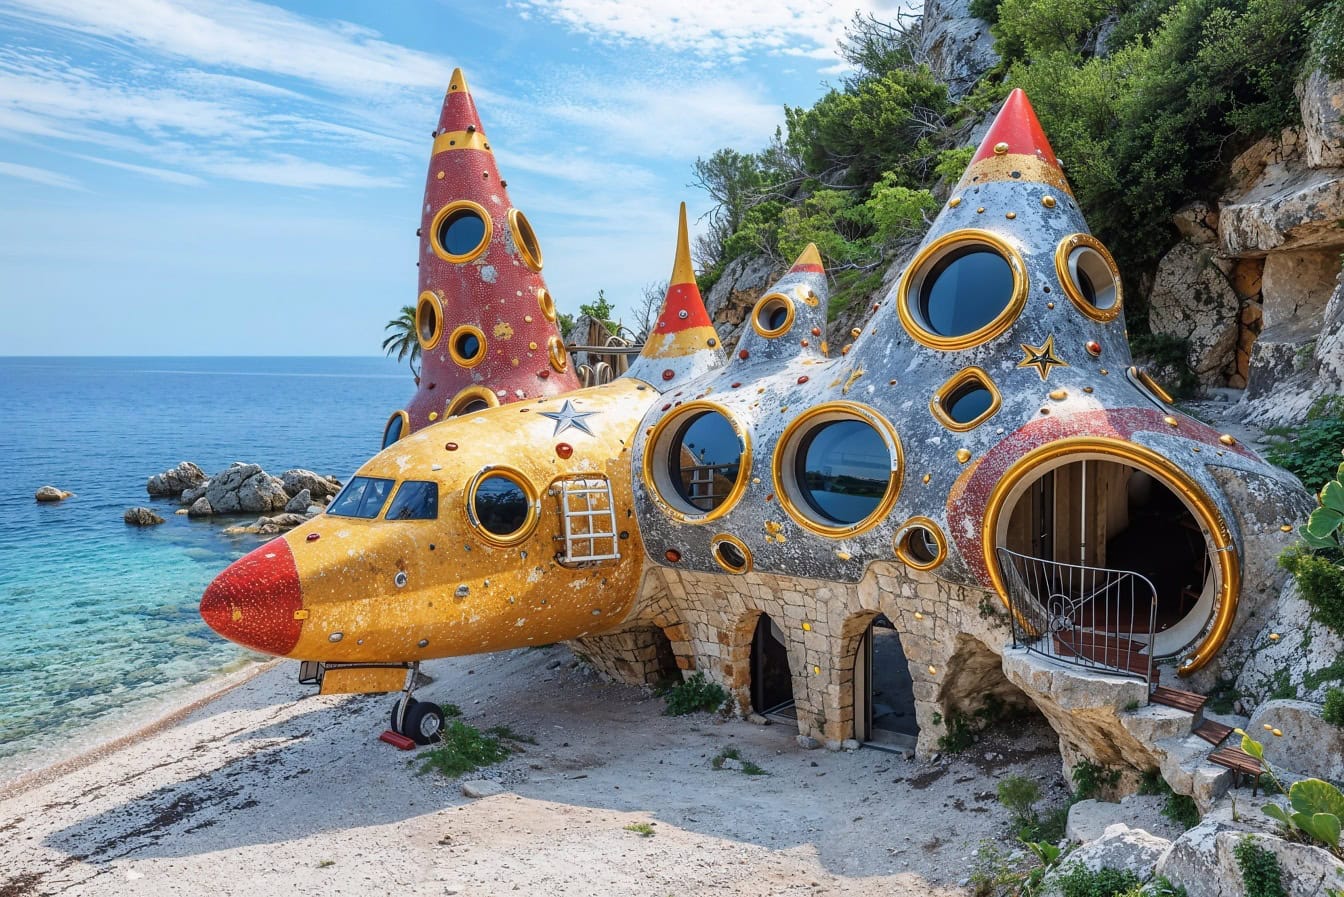 Fly vedtaget til strandhotel i Kroatien